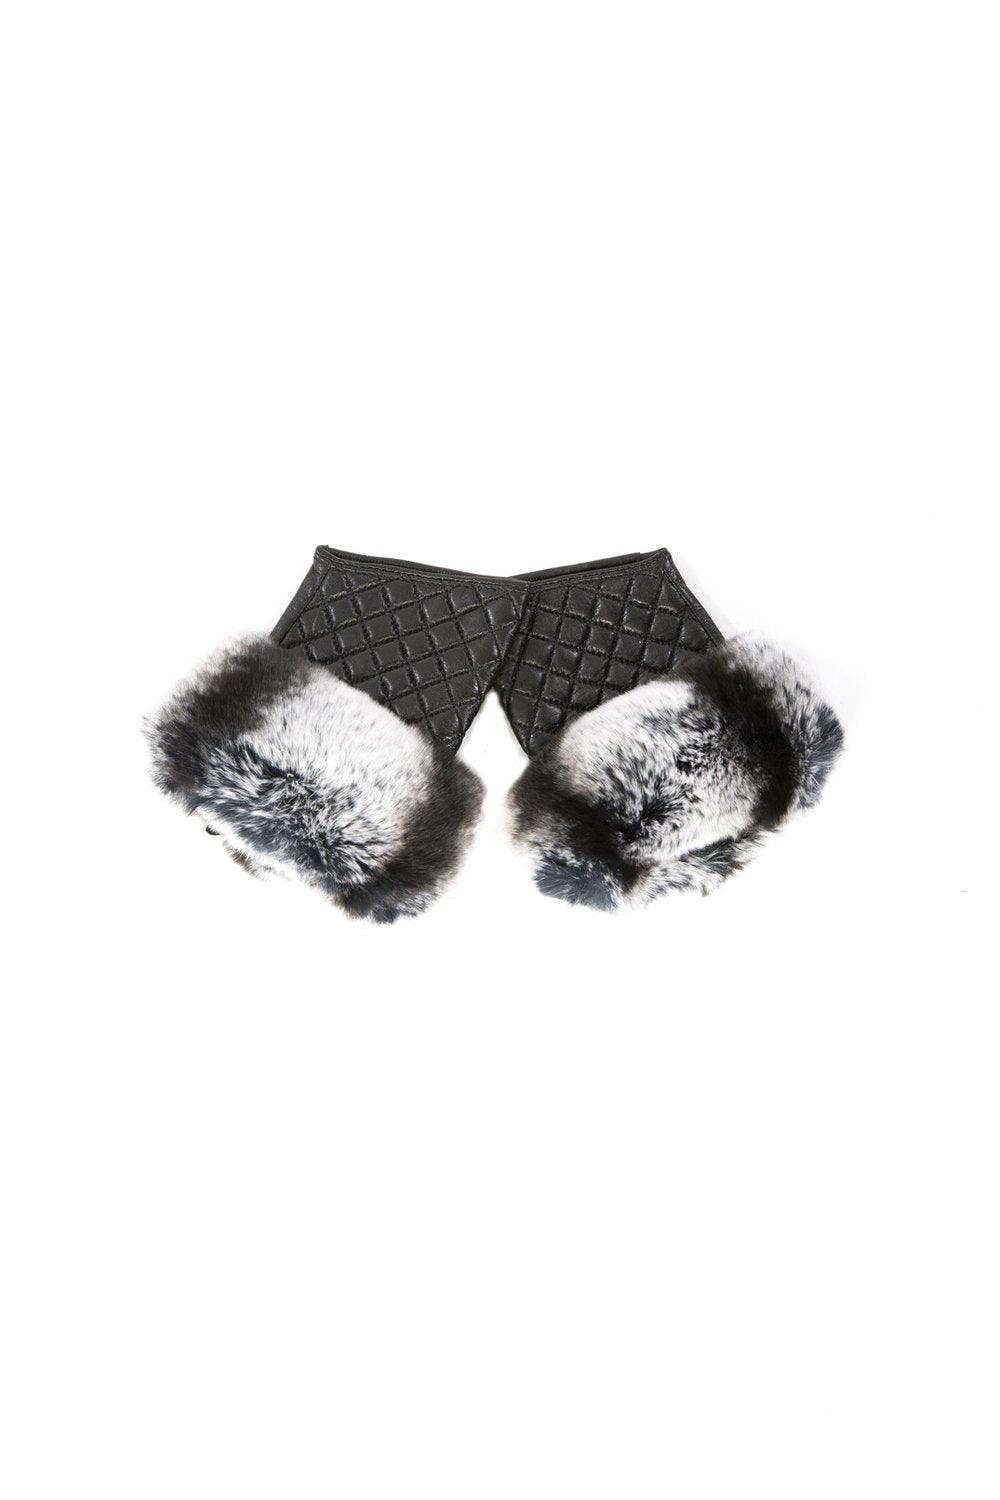 Jayley - Smart Phone Leather & Fur Gloves - OutDazl